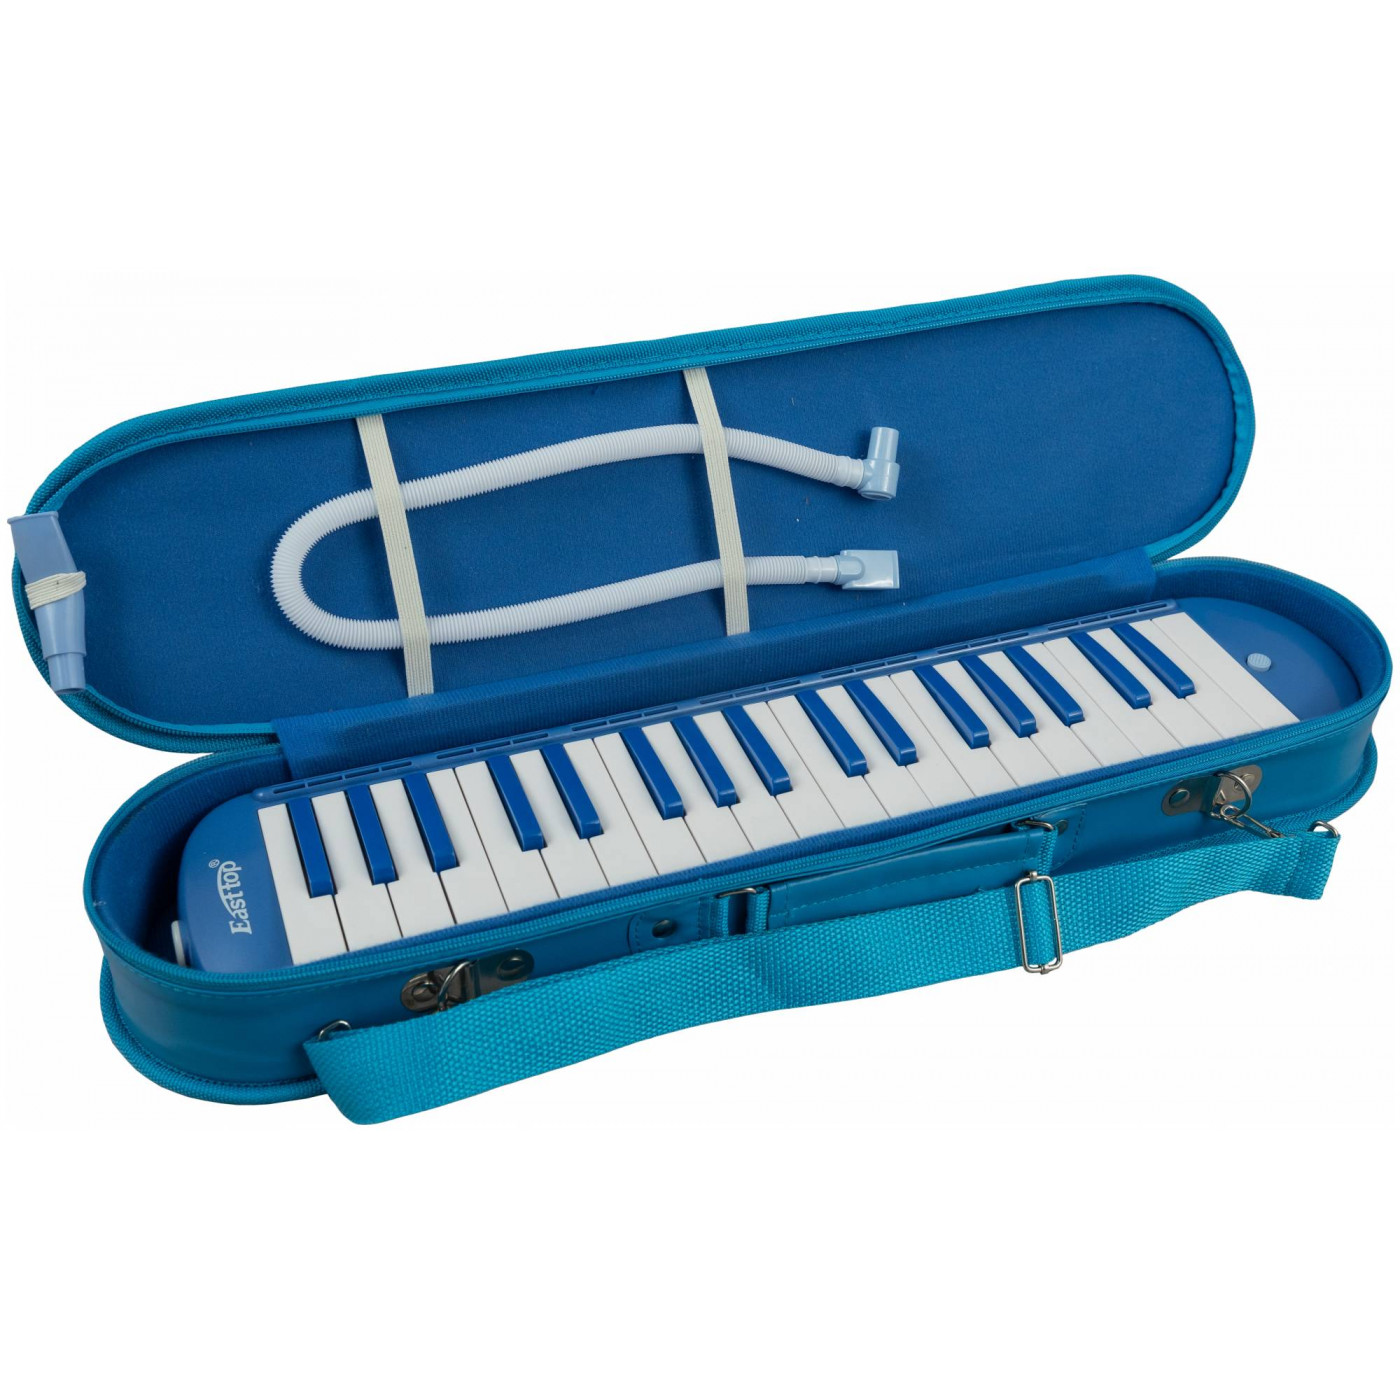 BEE BM-37SL BLUE - Мелодика духовая клавишная 37 клавиш, цвет голубой, мягкий чехол